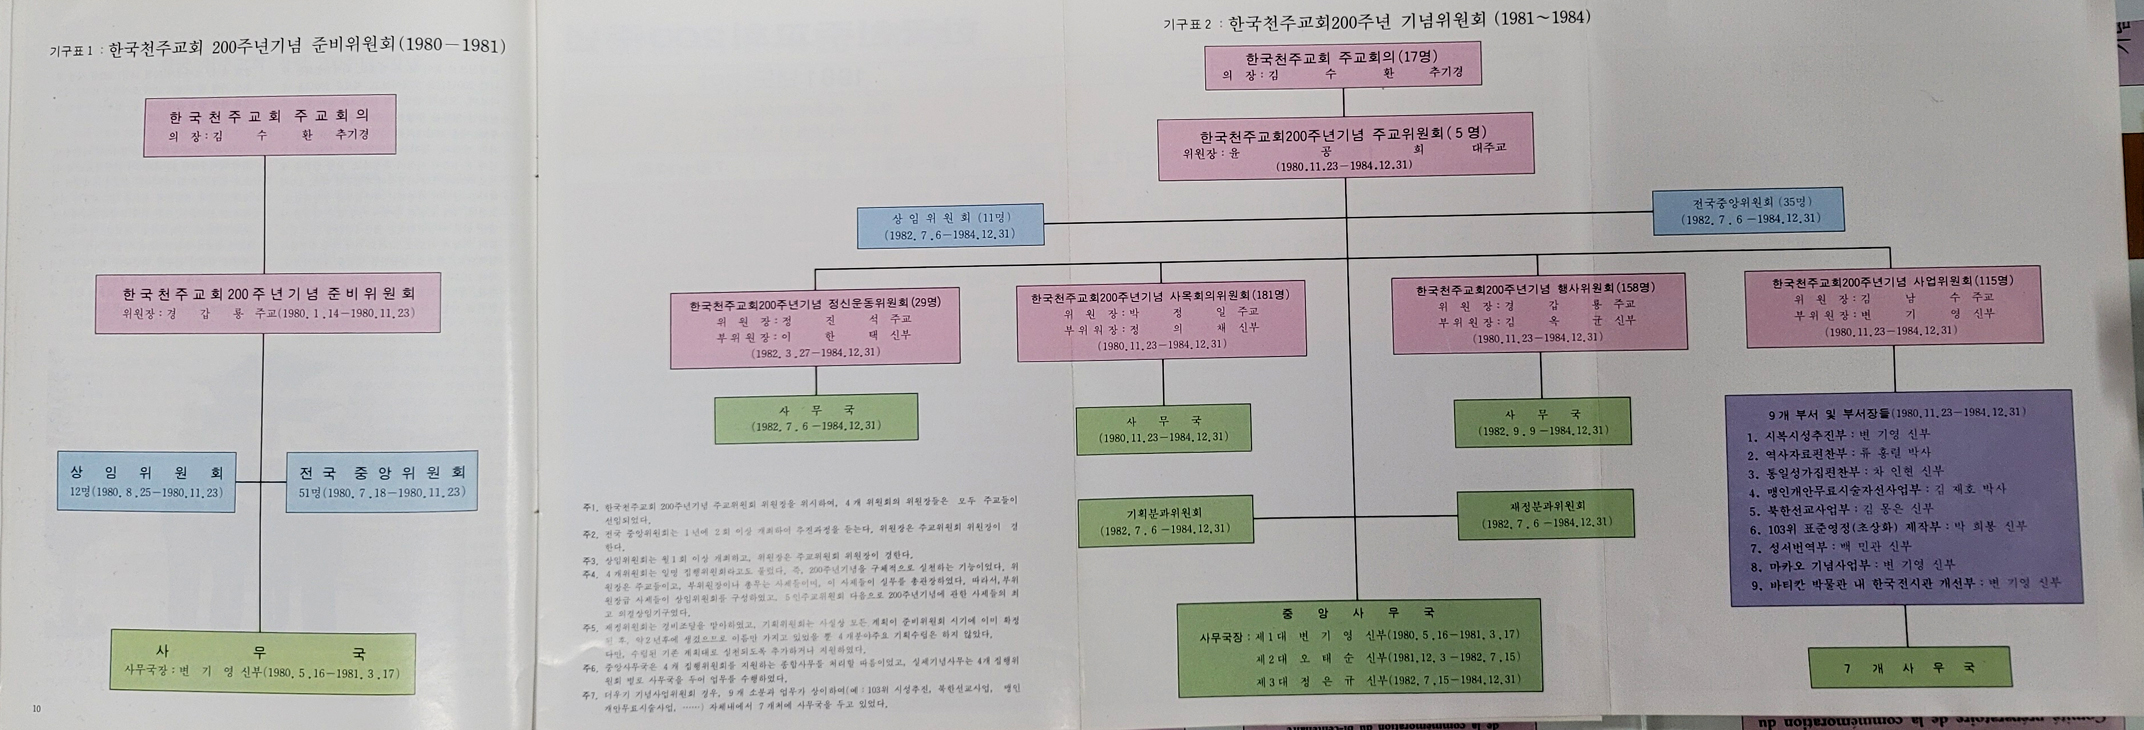 한국천주교회200주년 기념준비 5개년 계획(1980~1984)